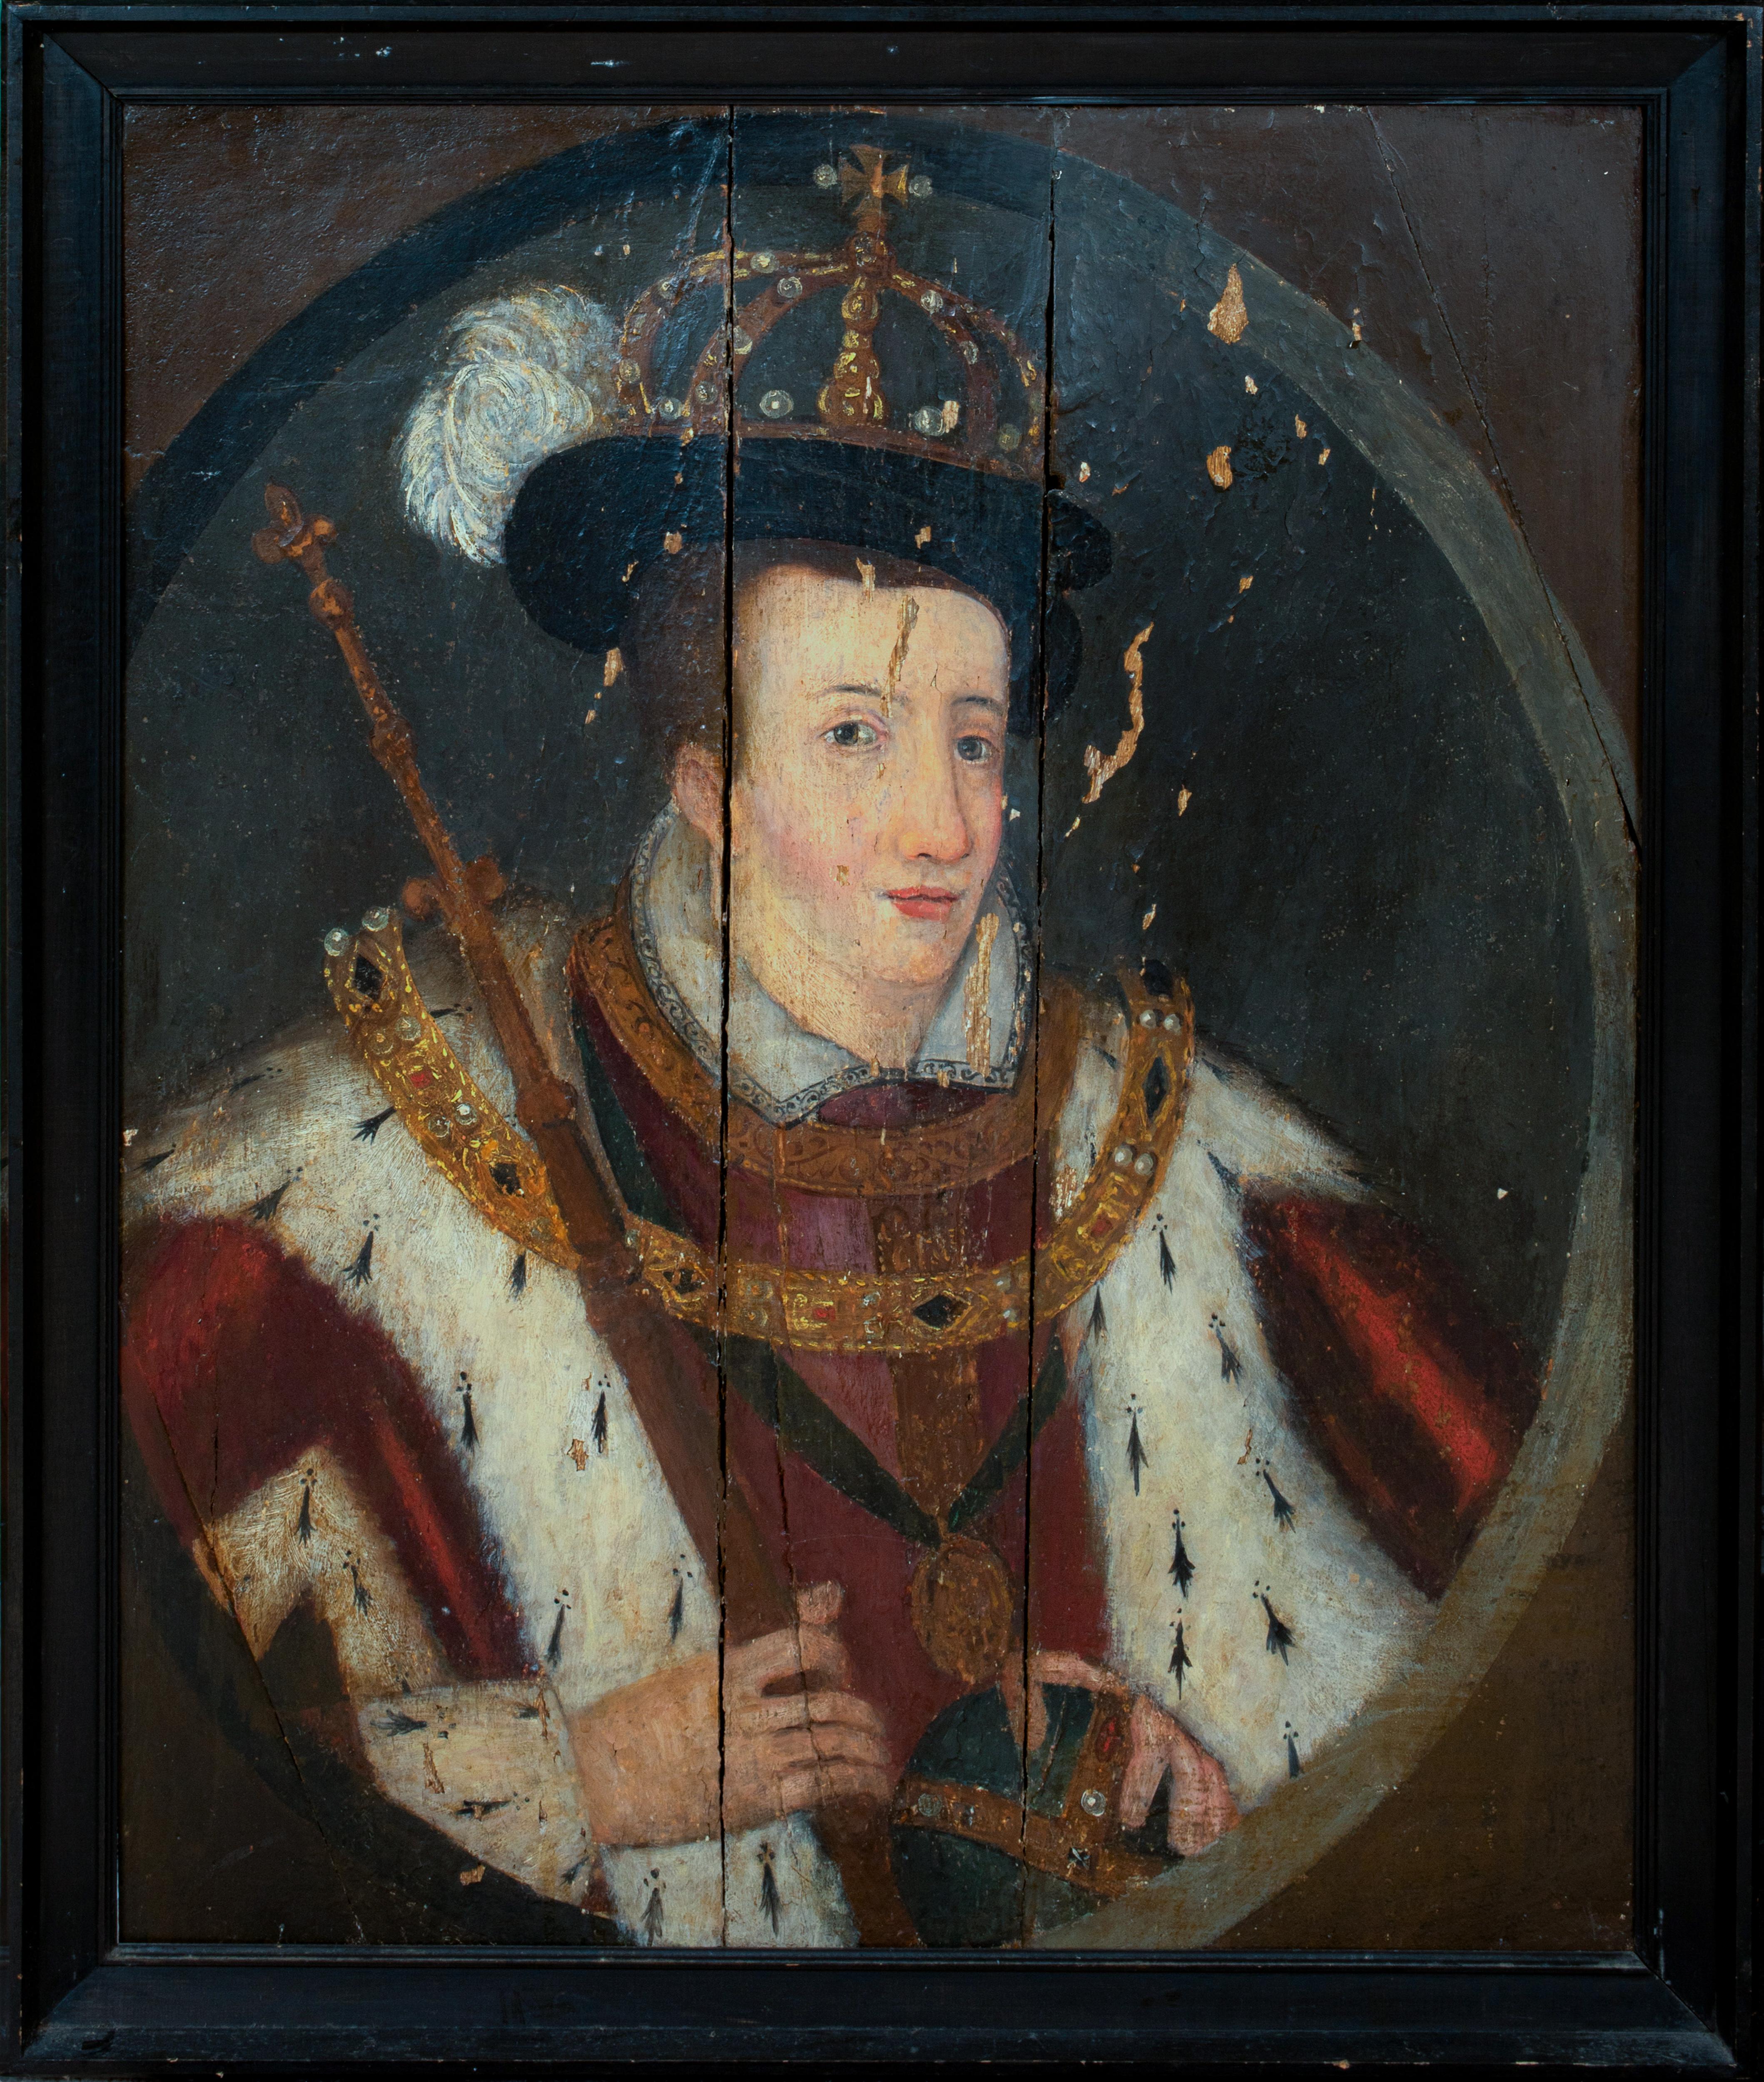 Unknown Portrait Painting – Coronation-Porträt von König Edward VI. (1537-1553) als König von England und Irland